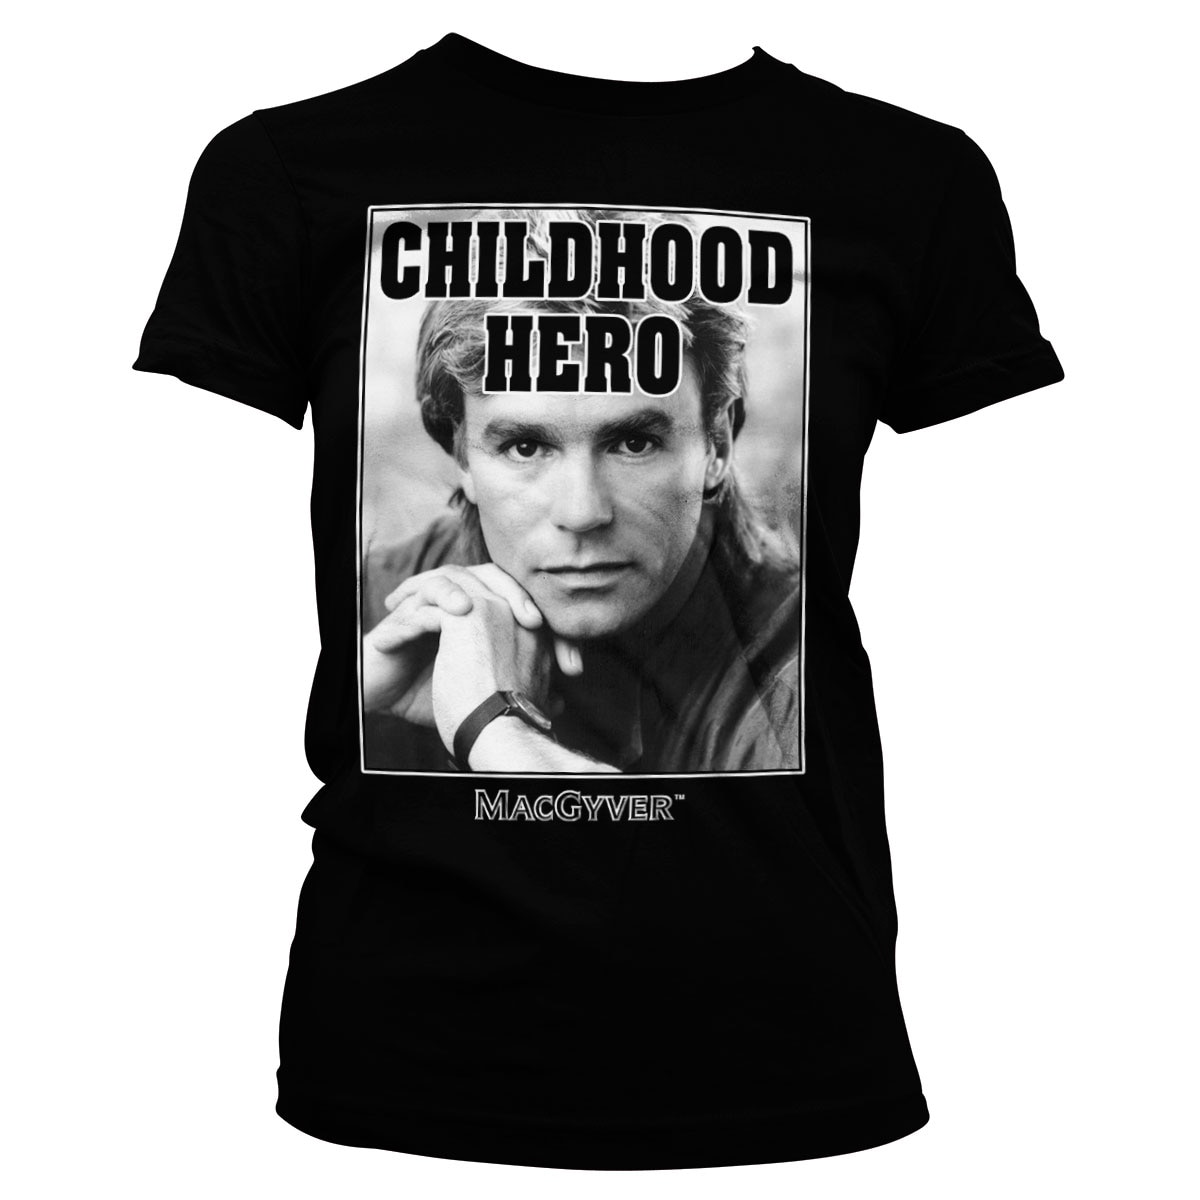 Pickering Nogen som helst Loaded Macgyver - Childhood Hero Girly Tee - Shirtstore